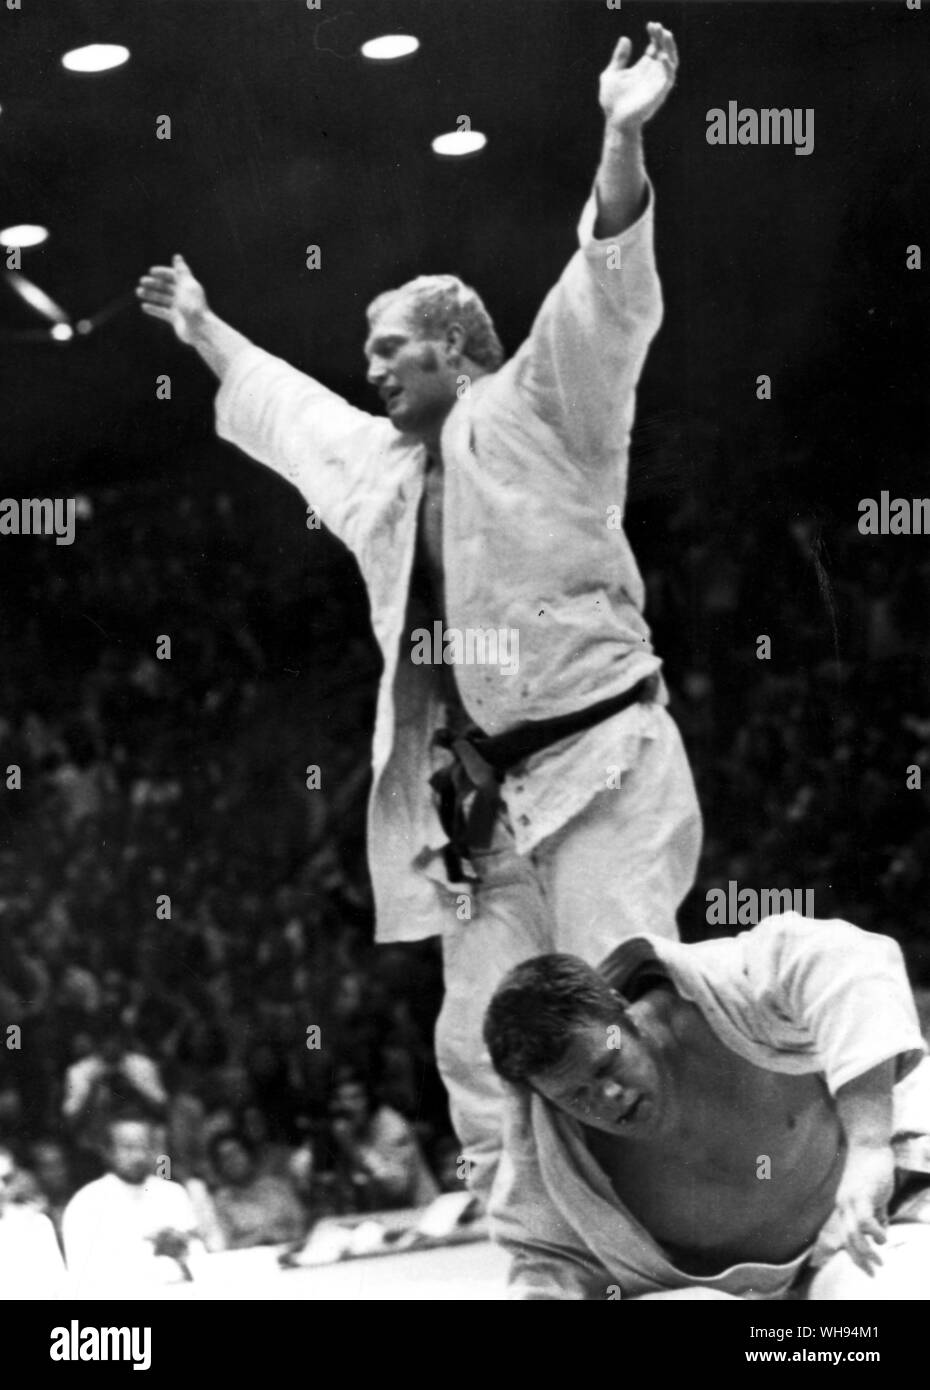 Settembre 1972: Olimpiadi di Monaco di Baviera: Willem Ruska (Paesi Bassi) solleva le braccia dopo aver battuto il russo, Kusnezov vitali nel finale di aprire-divisione del peso di Olympic judo. Foto Stock